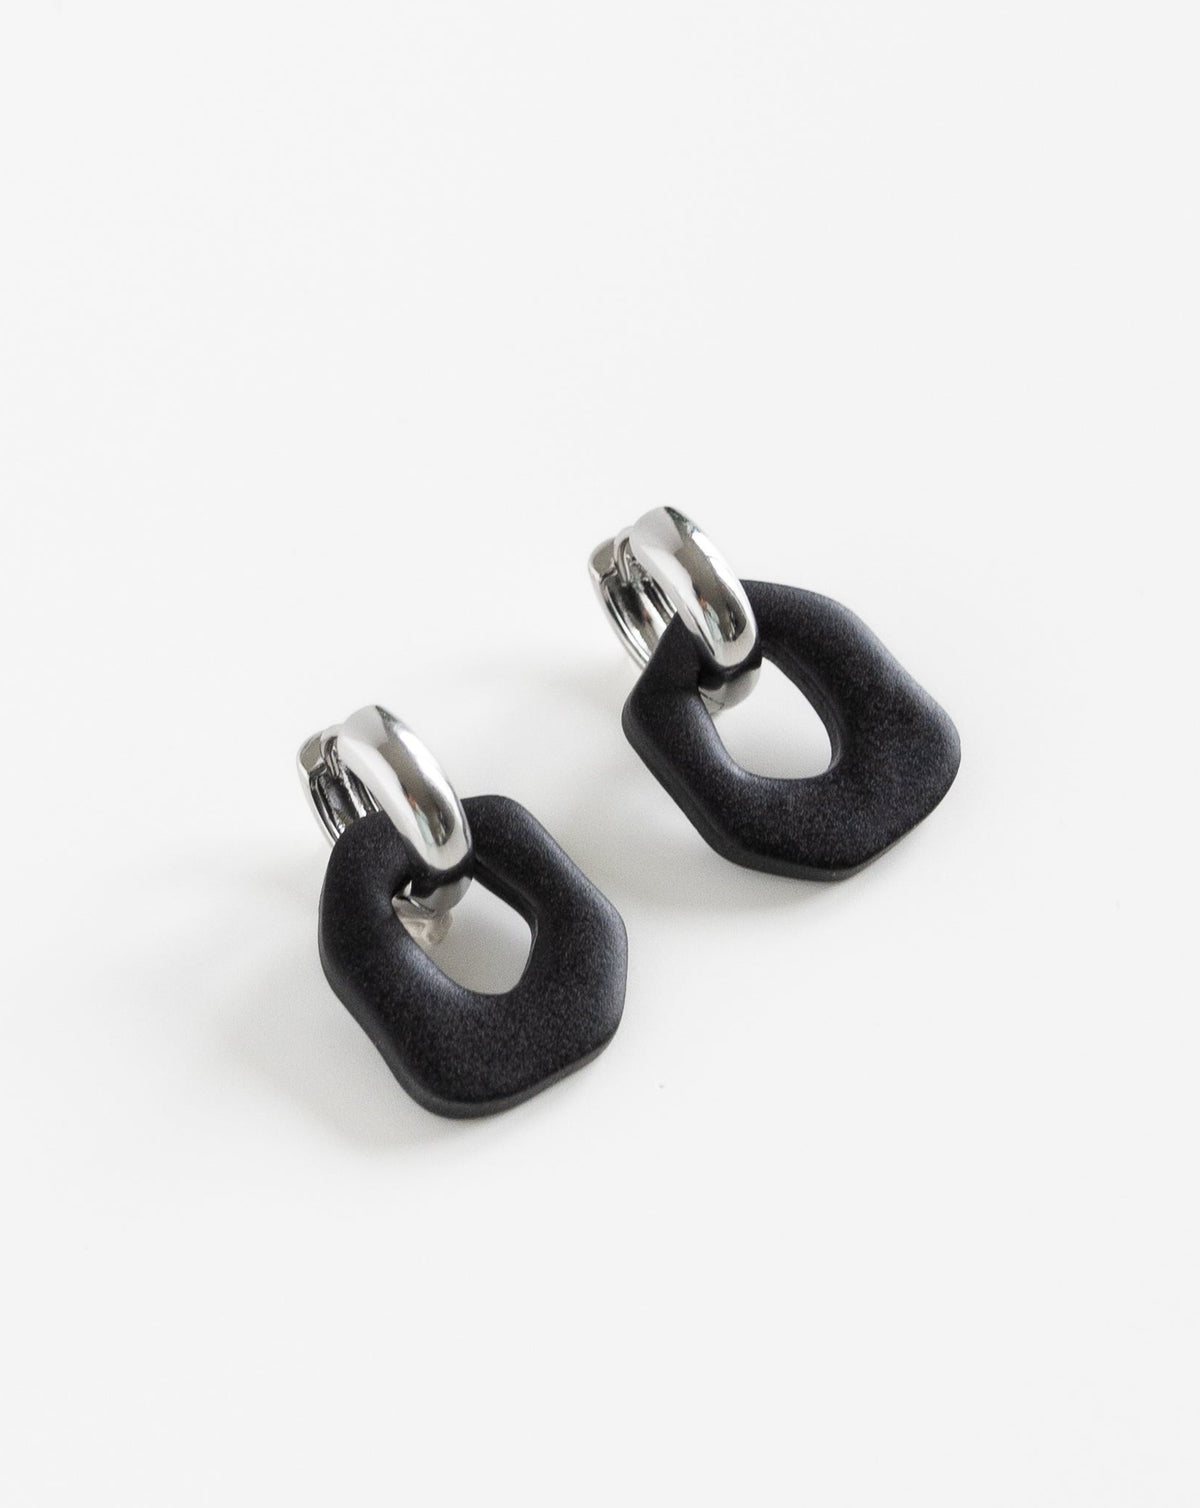 Darien earrings in Black color with silver hoops, side view